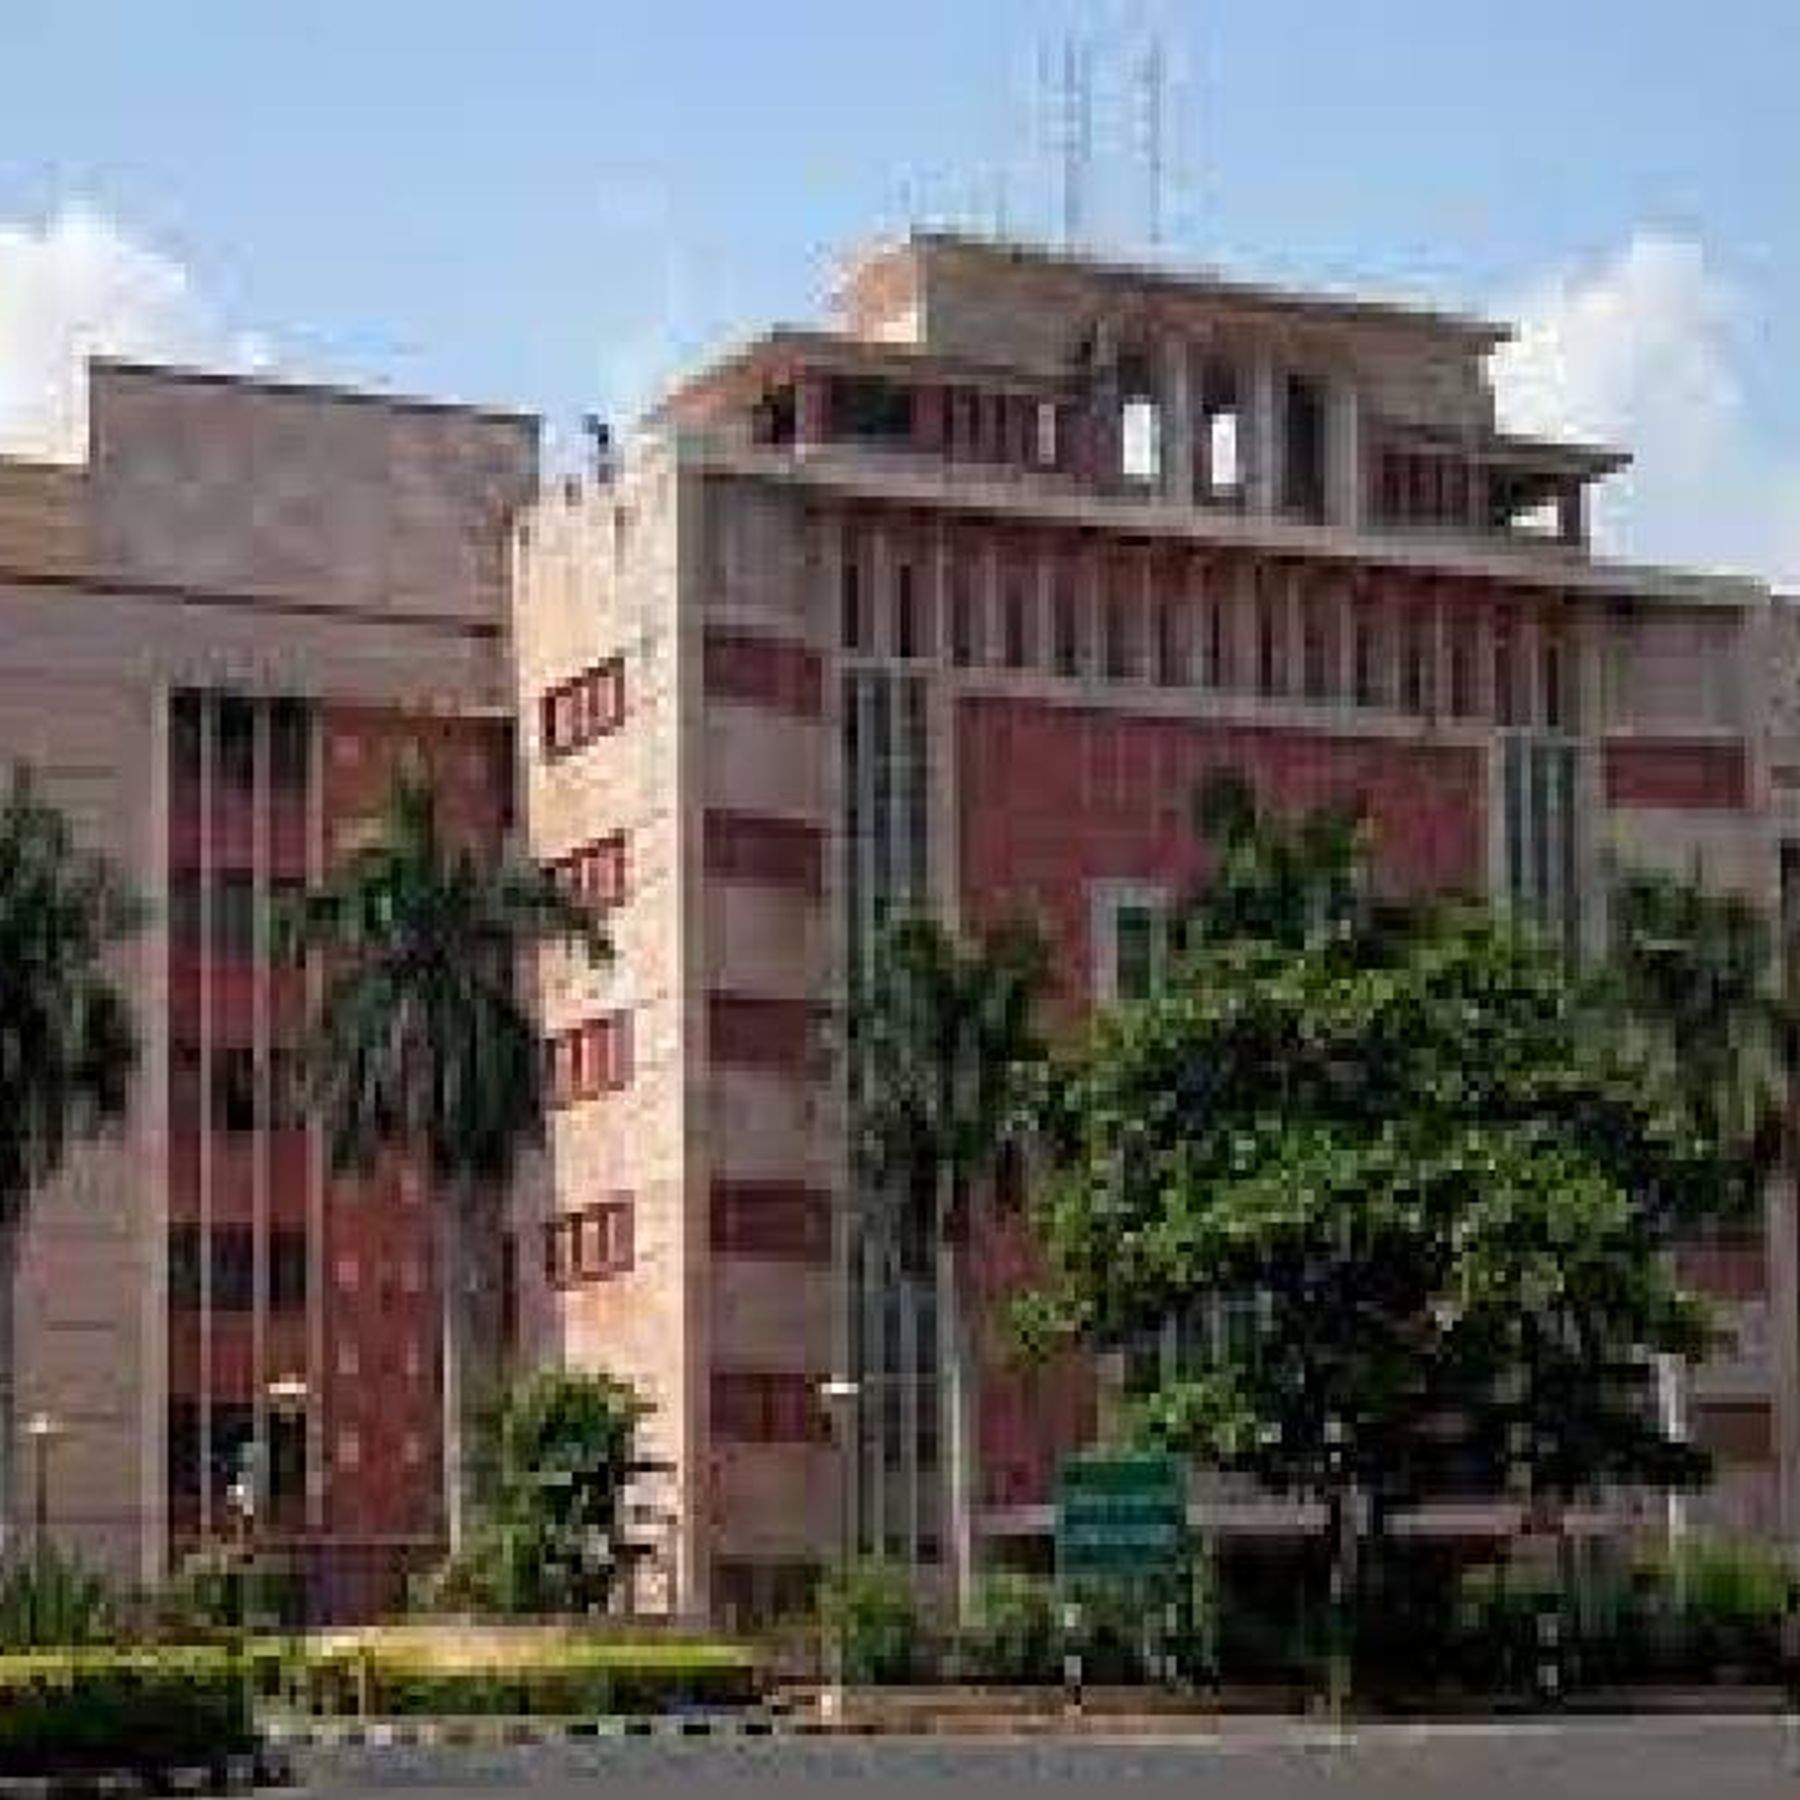 MP BIG NEWS: नर्सिंग काउंसिल की रजिस्ट्रार सुनीता शिजू बहाल, फर्जी तरीके से कॉलेजों को मान्यता देने के लगे थे आरोप